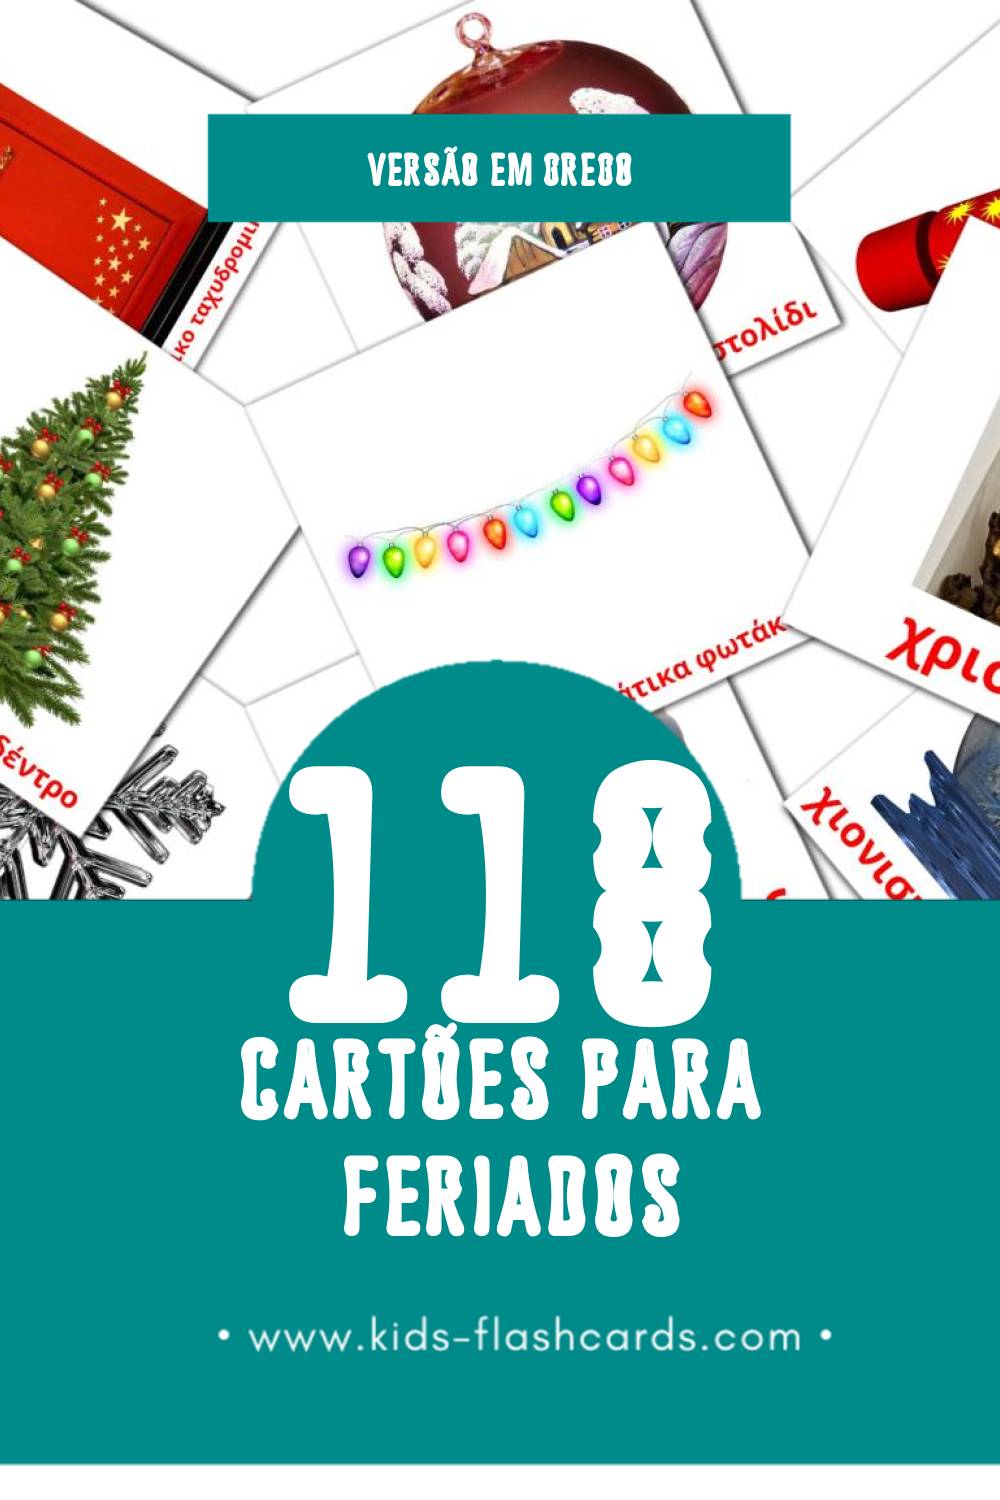 Flashcards de Διακοπές  Visuais para Toddlers (118 cartões em Grego)